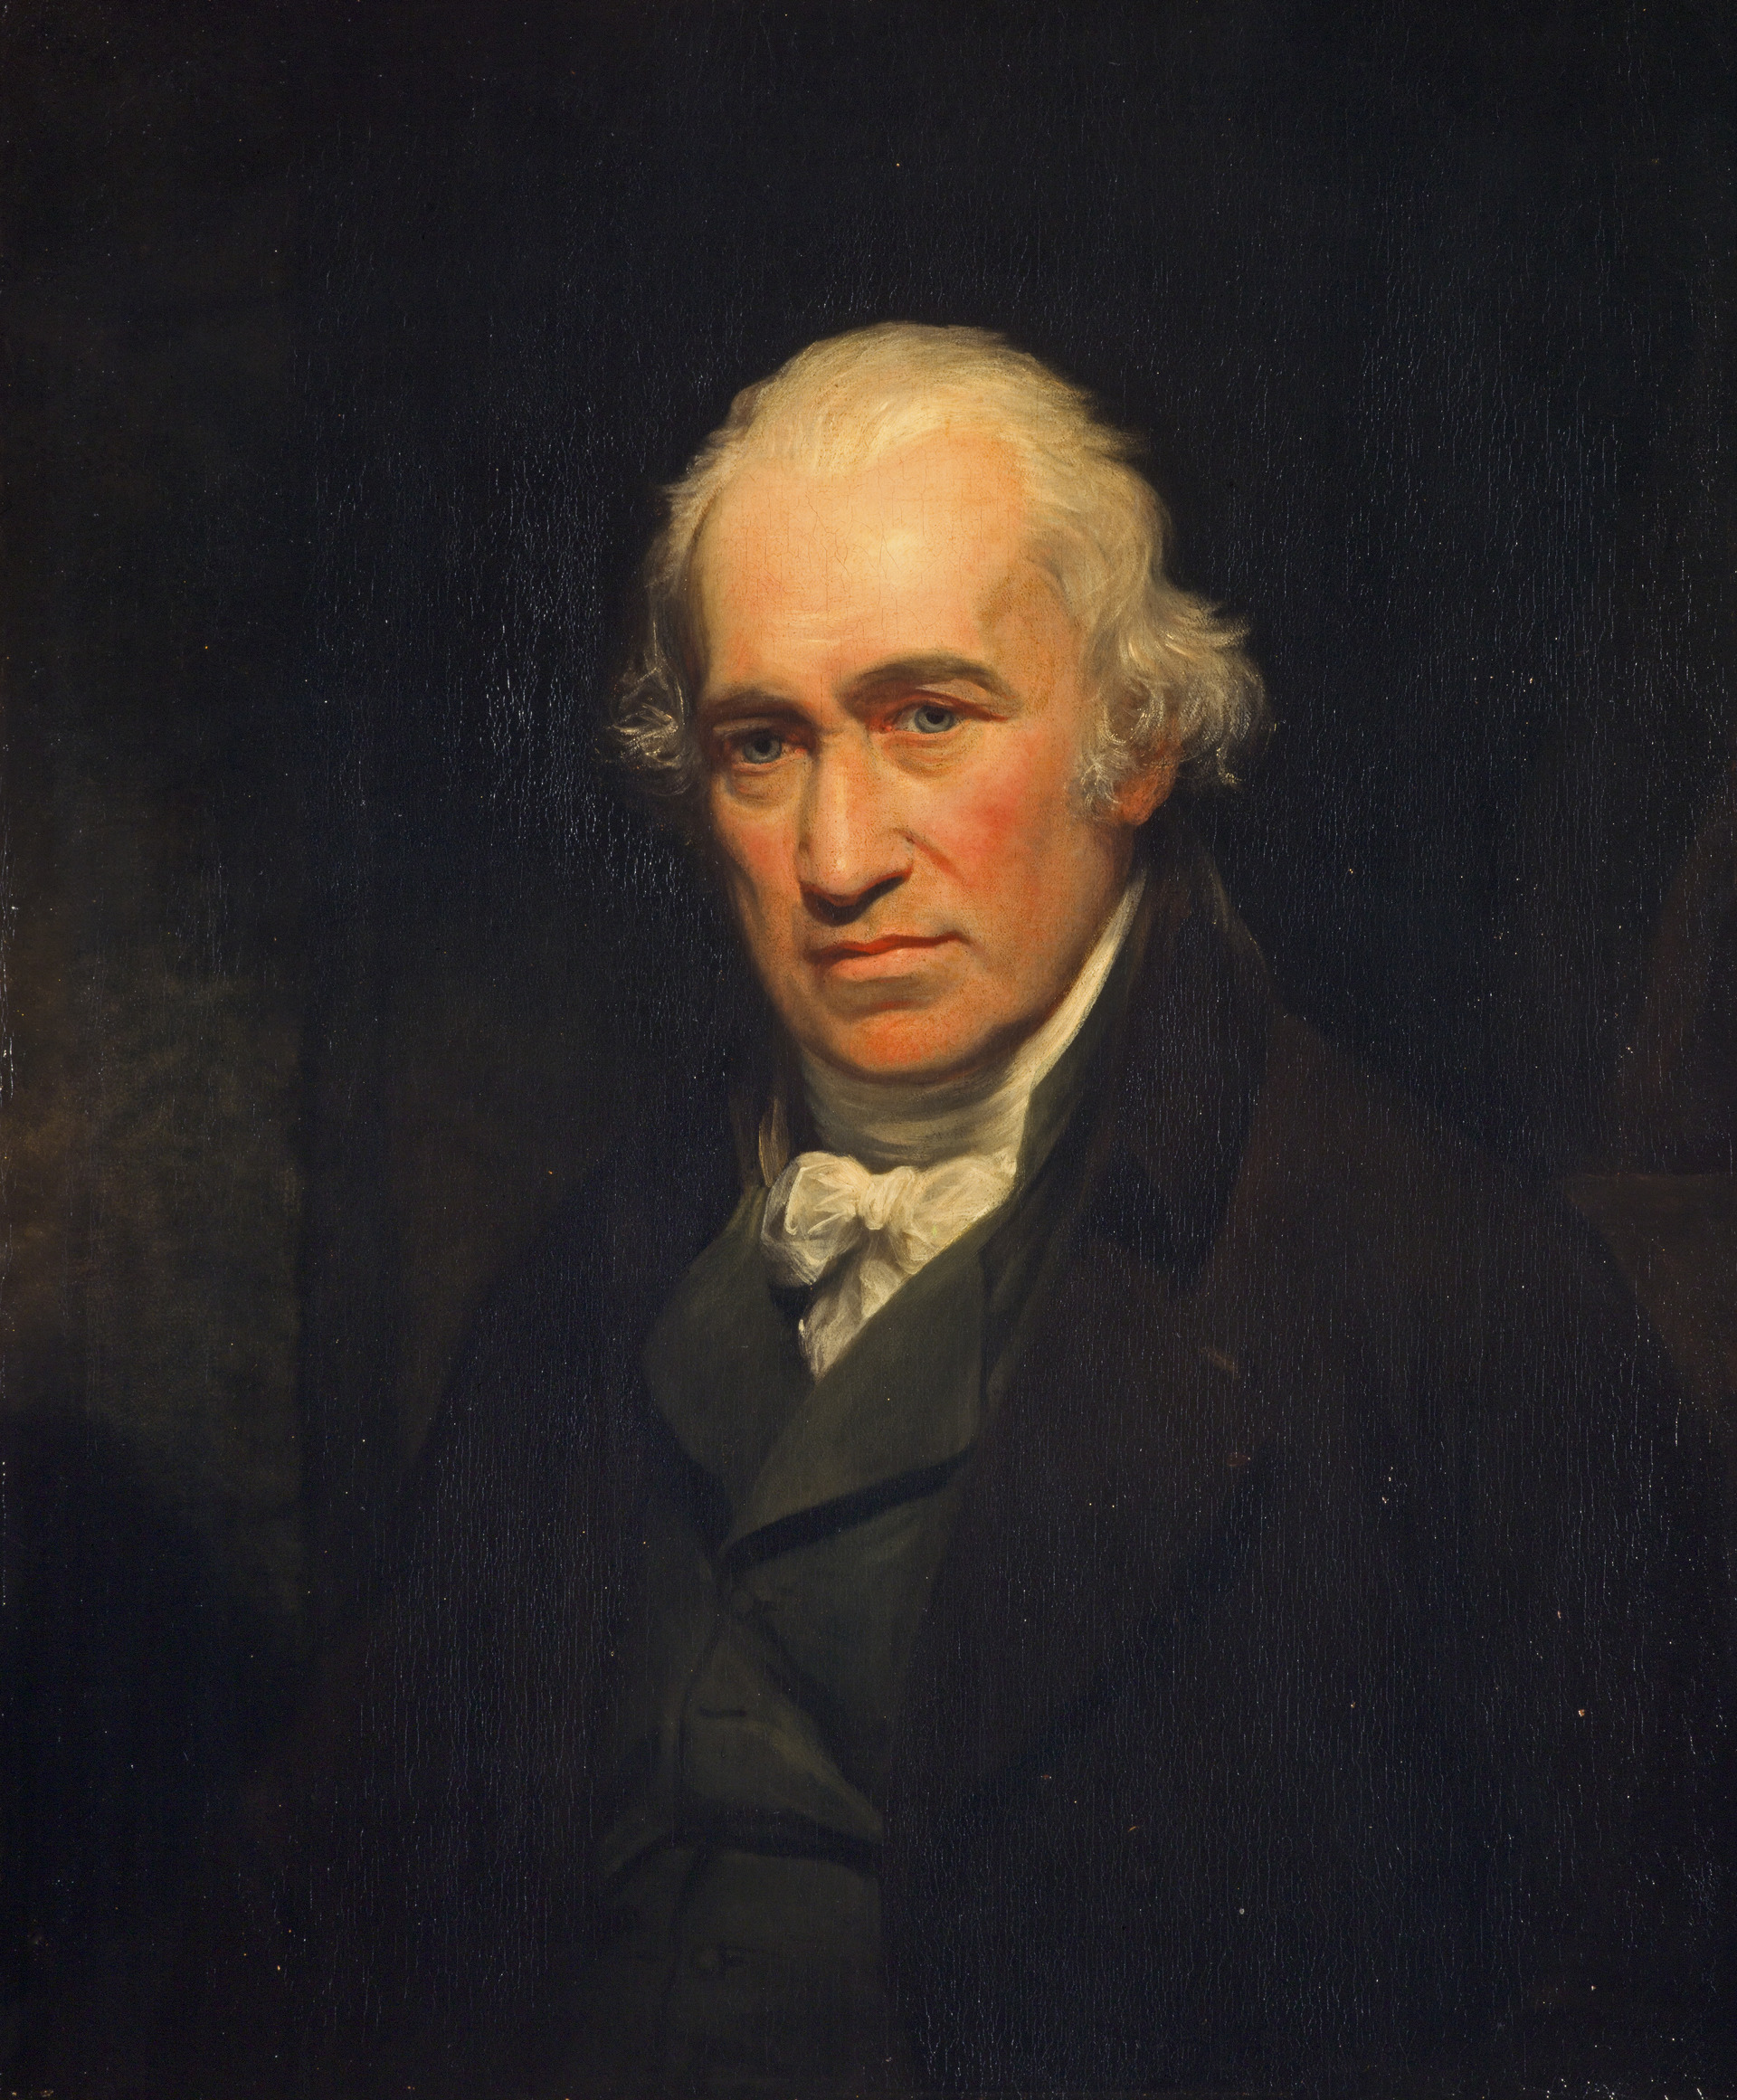 Джеймс Уатт (1736-1819).